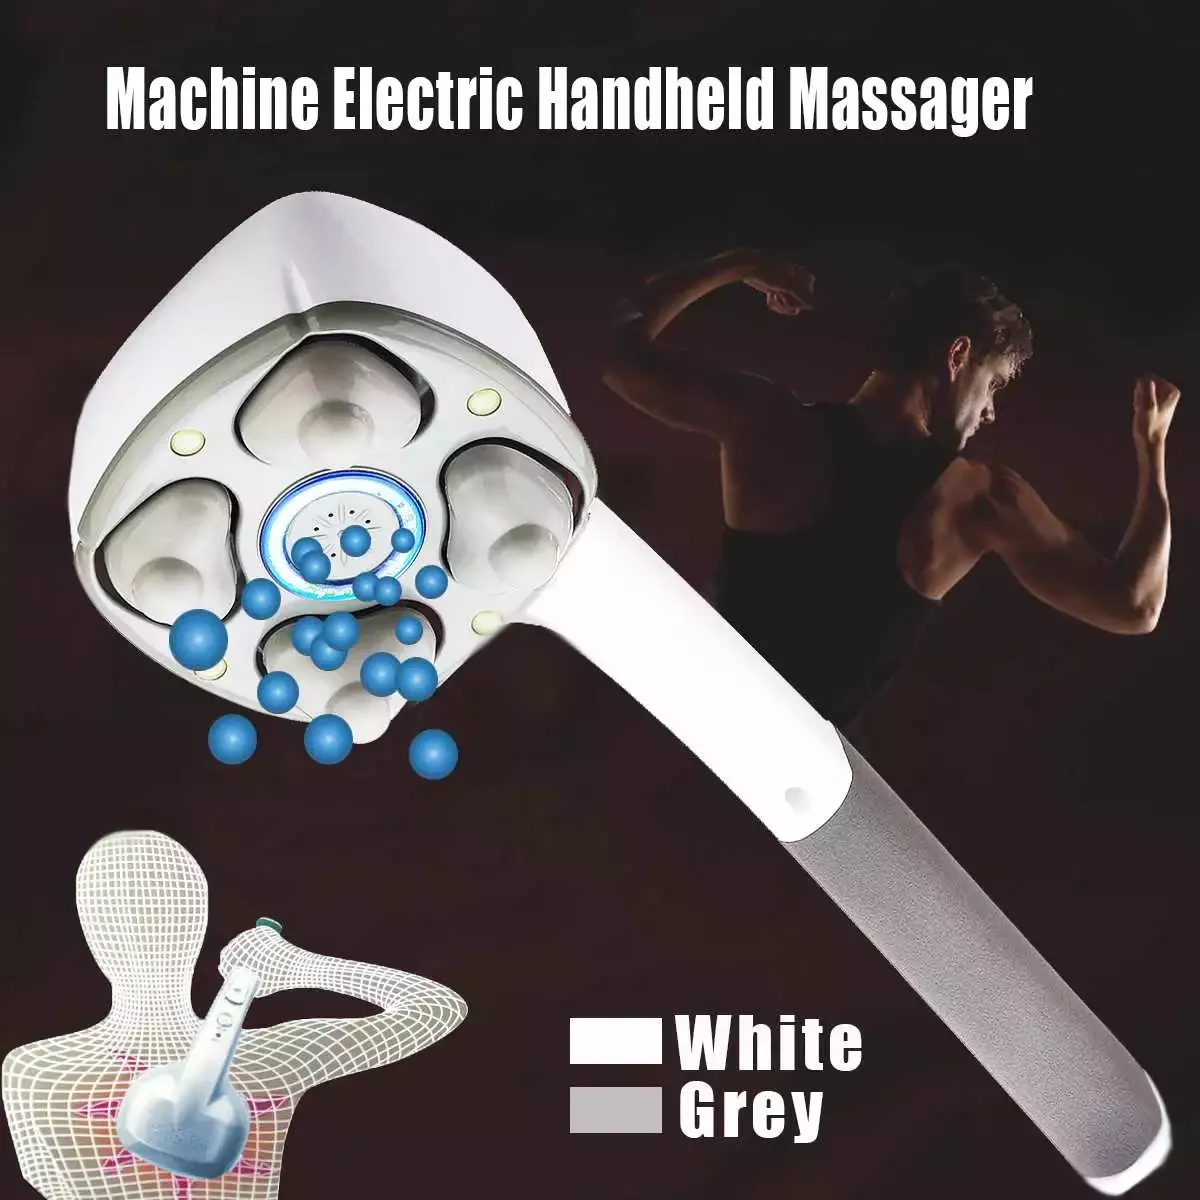 

Массажер электрический ручной, вибрационная машинка с четырьмя головками для полного массажа всего тела, шеи и спины, релаксации мышц, глуб...